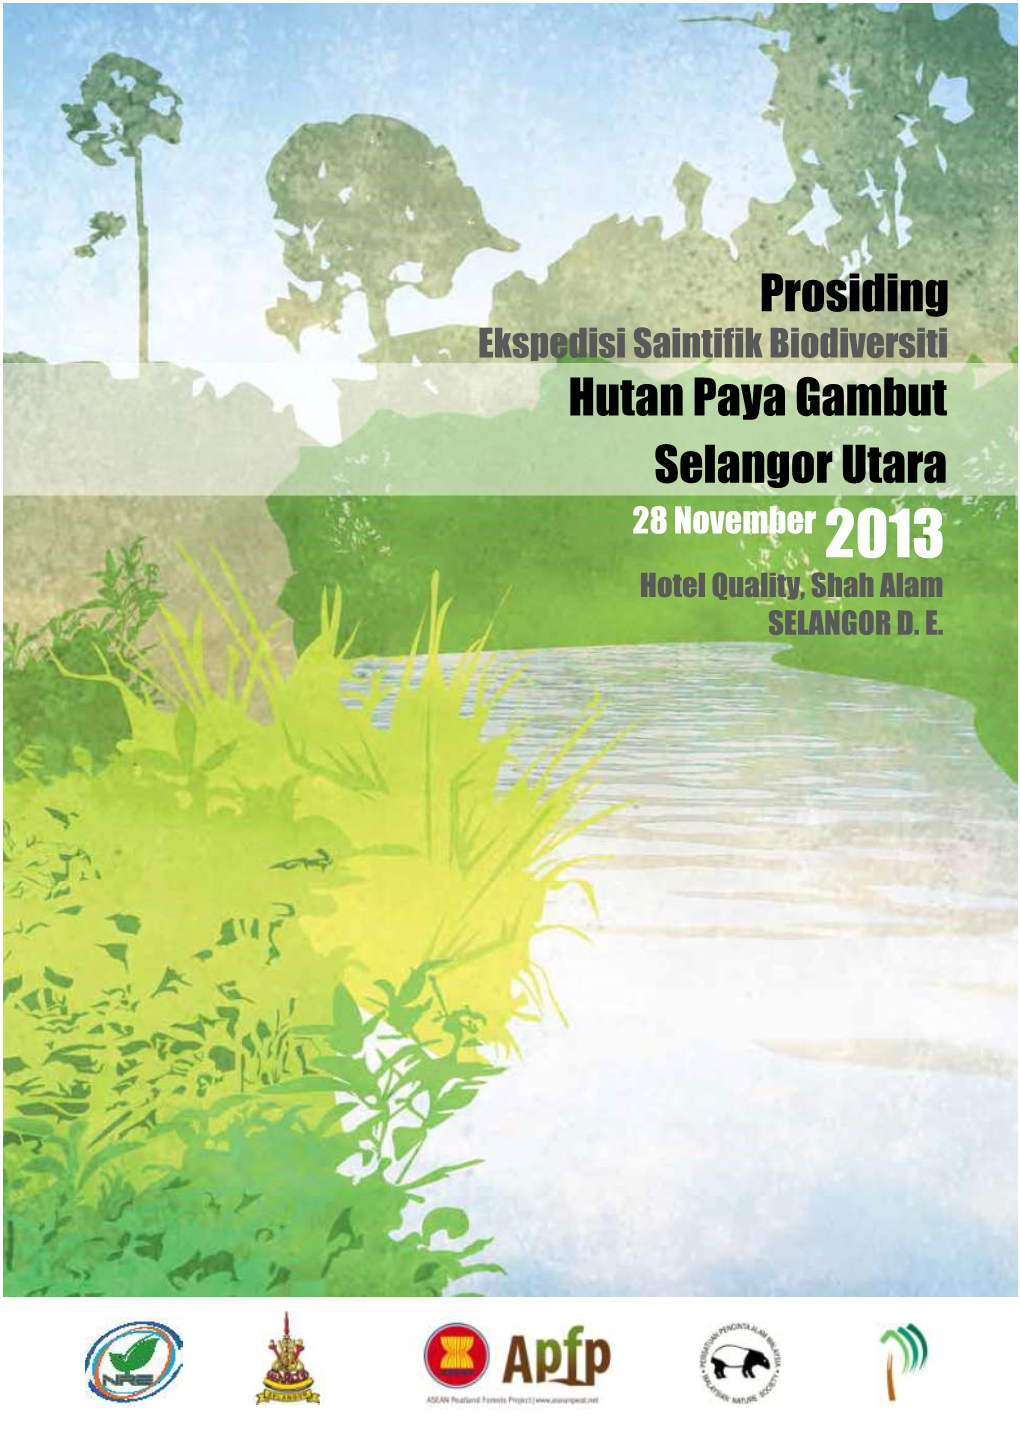 Ekspedisi Saintifik Biodiversiti Hutan Paya Gambut Selangor Utara 28 November 2013 Hotel Quality, Shah Alam SELANGOR D